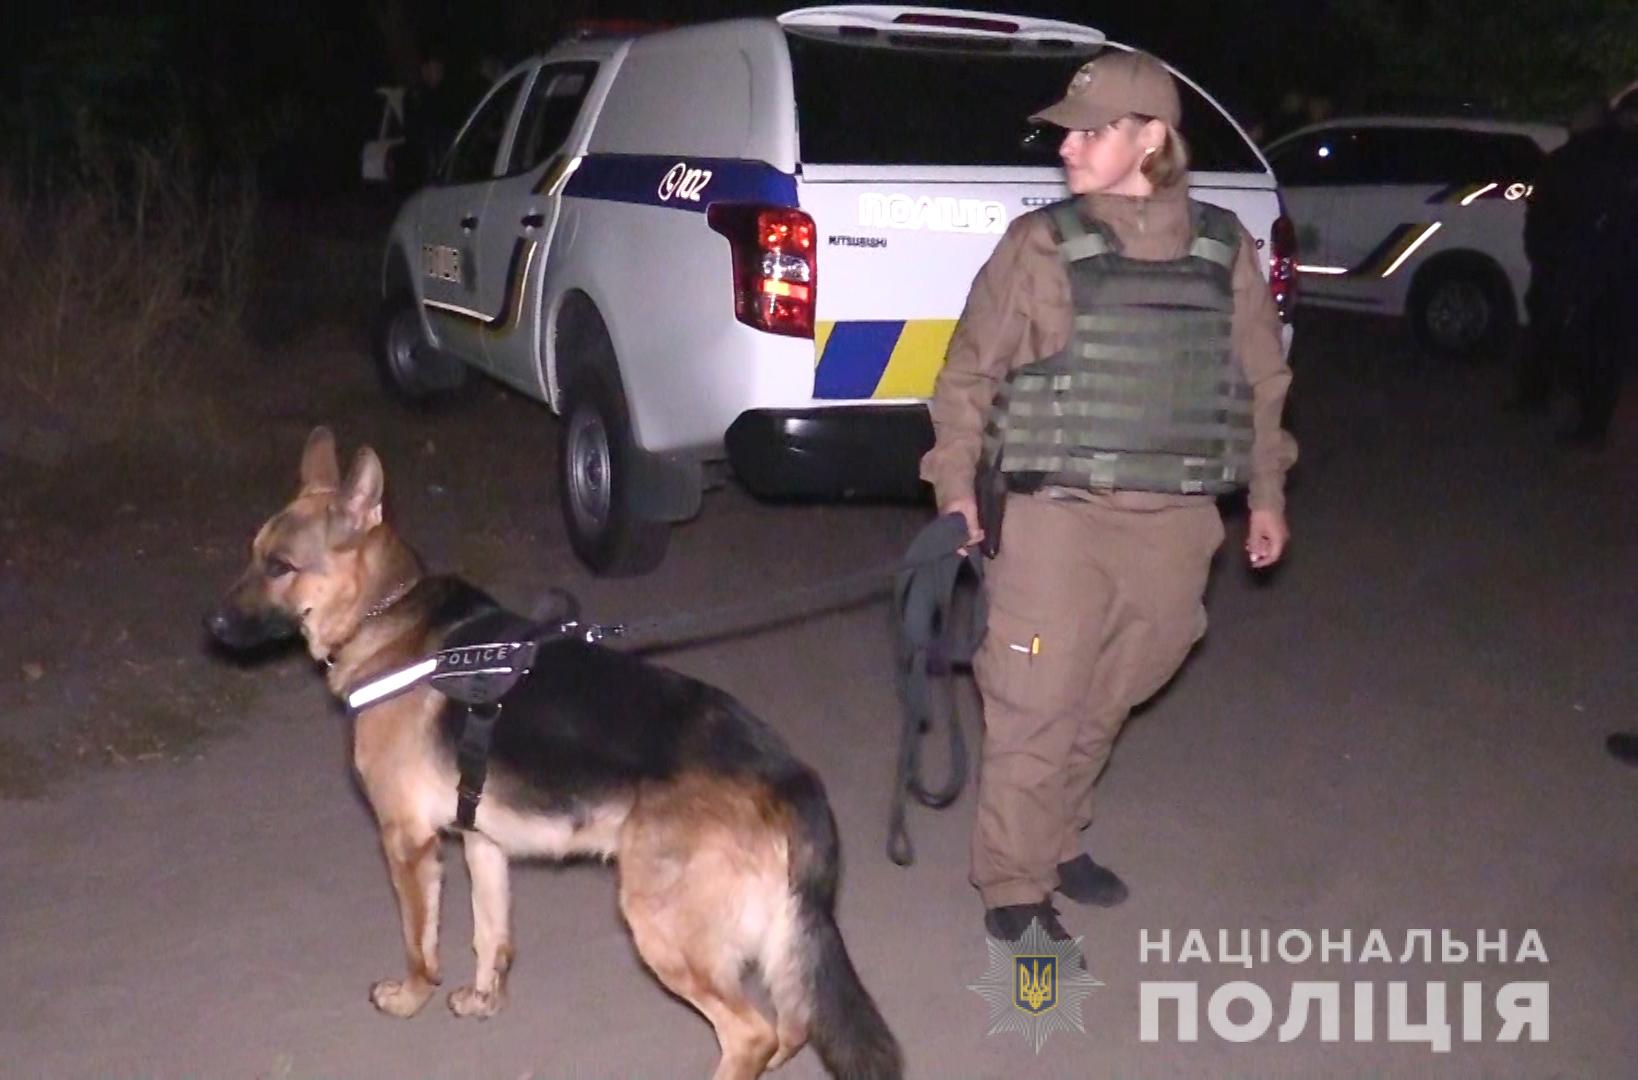 Правоохоронці розшукують чоловіка, який у Києві стріляв у спецпризначенців: трьох його товаришів затримали